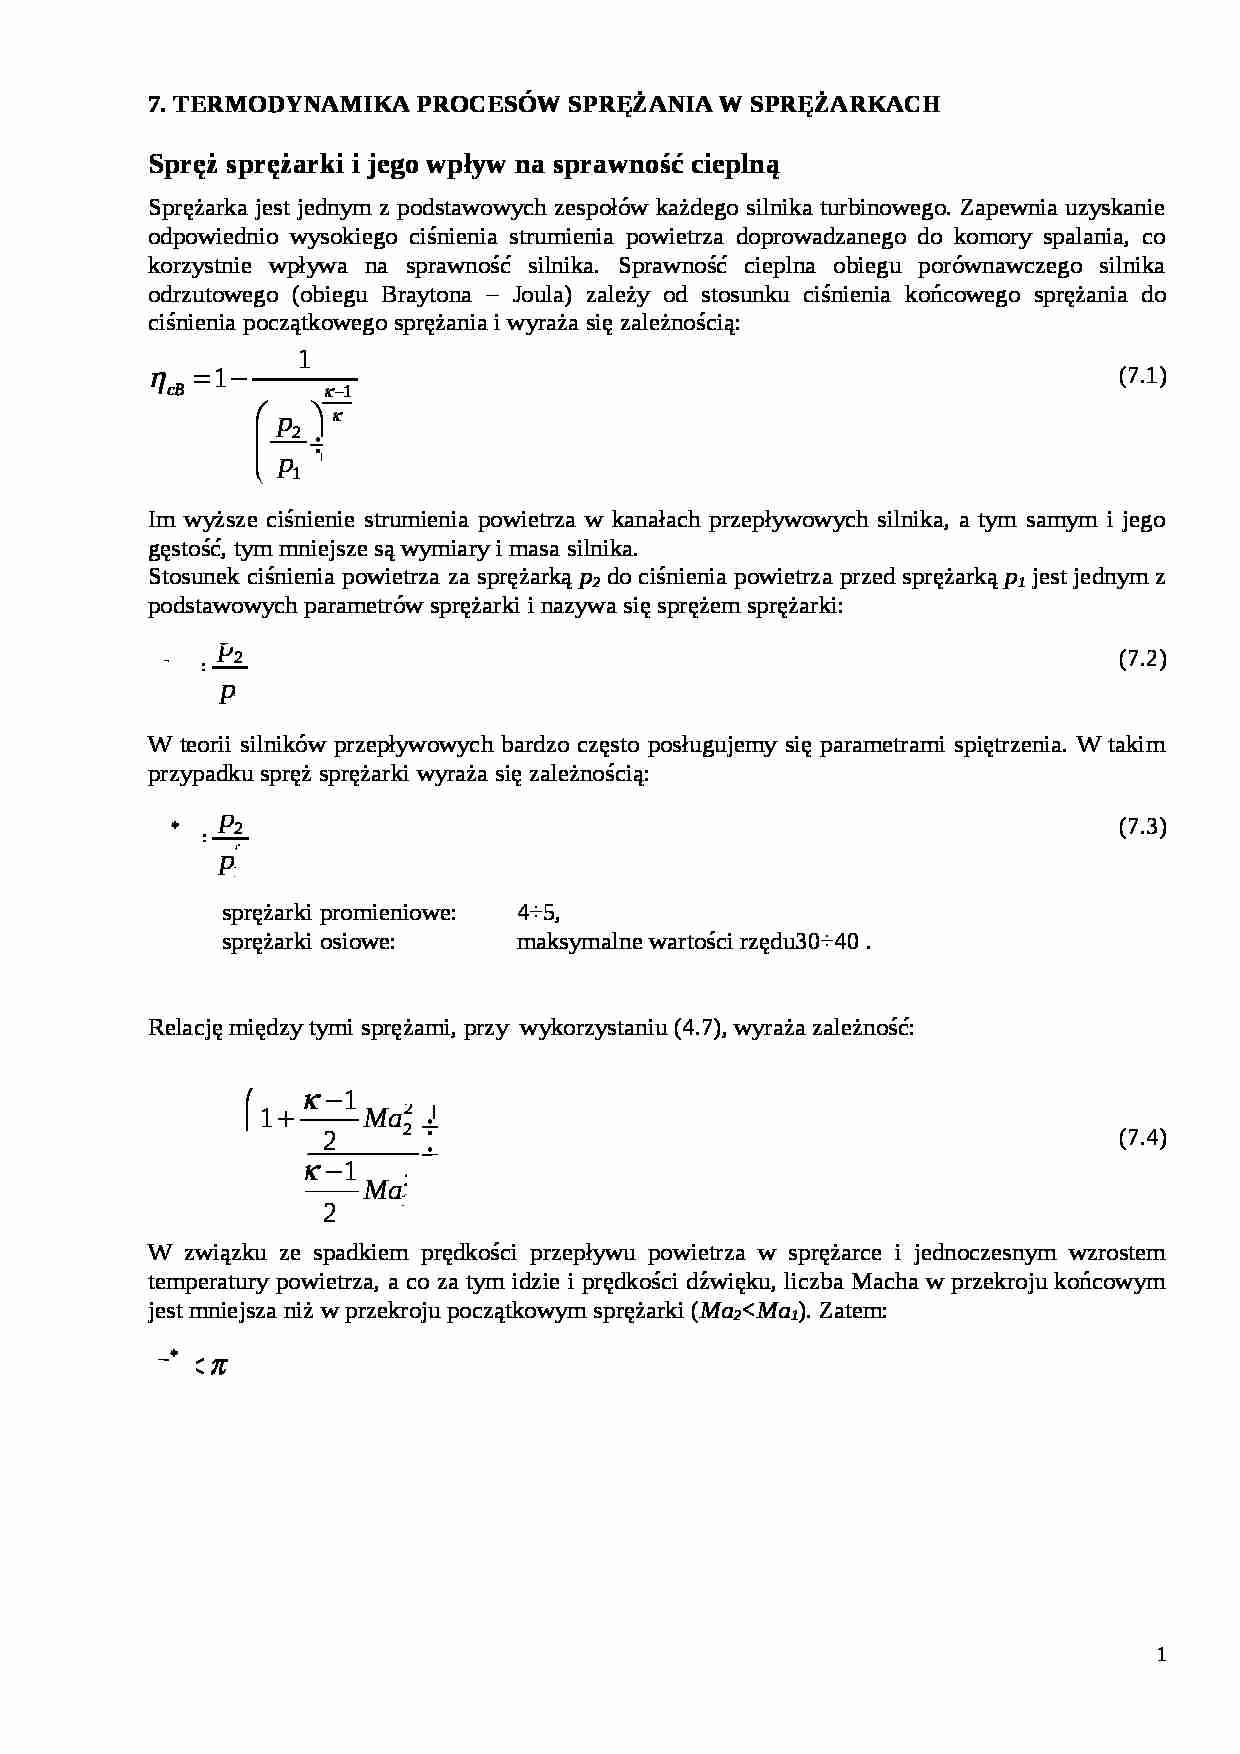 Termodynamika procesów sprężania - strona 1